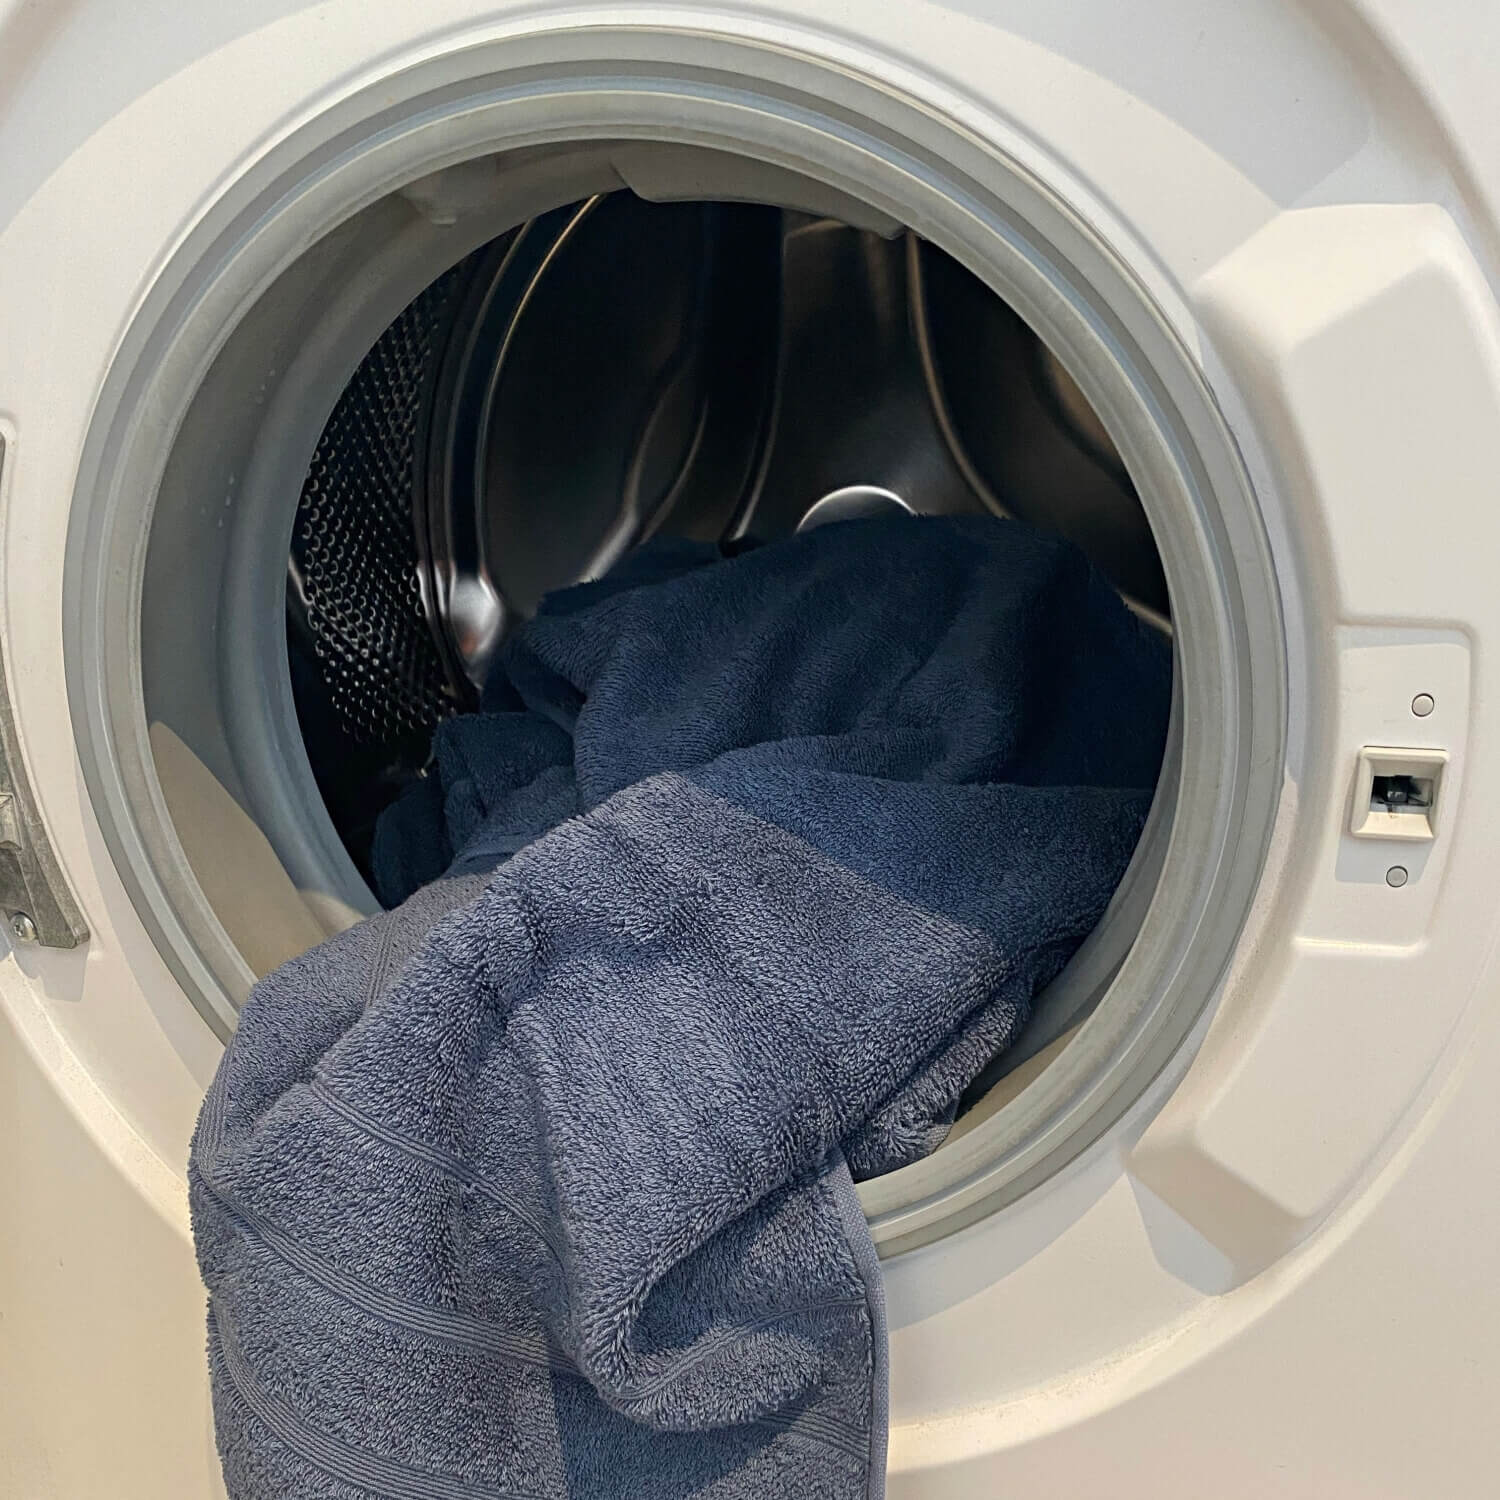 Et blåt håndklæde i en hvid vaskemaskine med åben låge